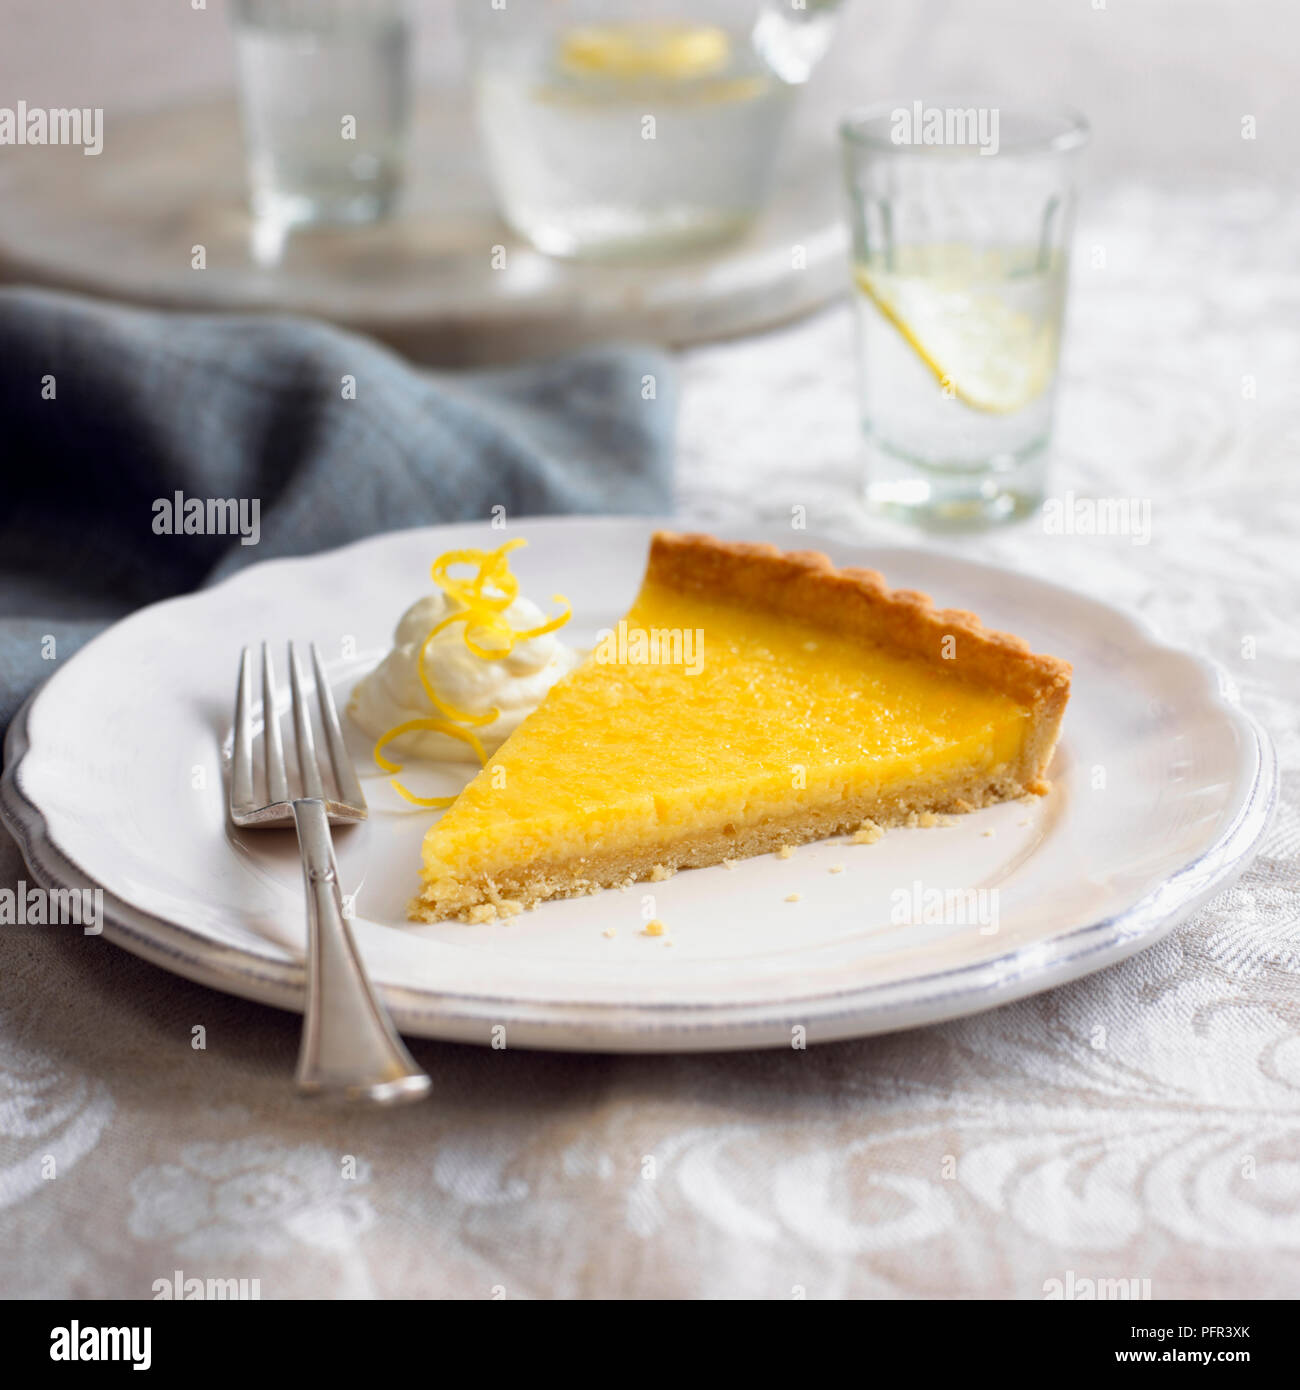 Tarte au citron, tarte au citron à la crème et le zeste de citron, sur une assiette, avec la fourchette Banque D'Images